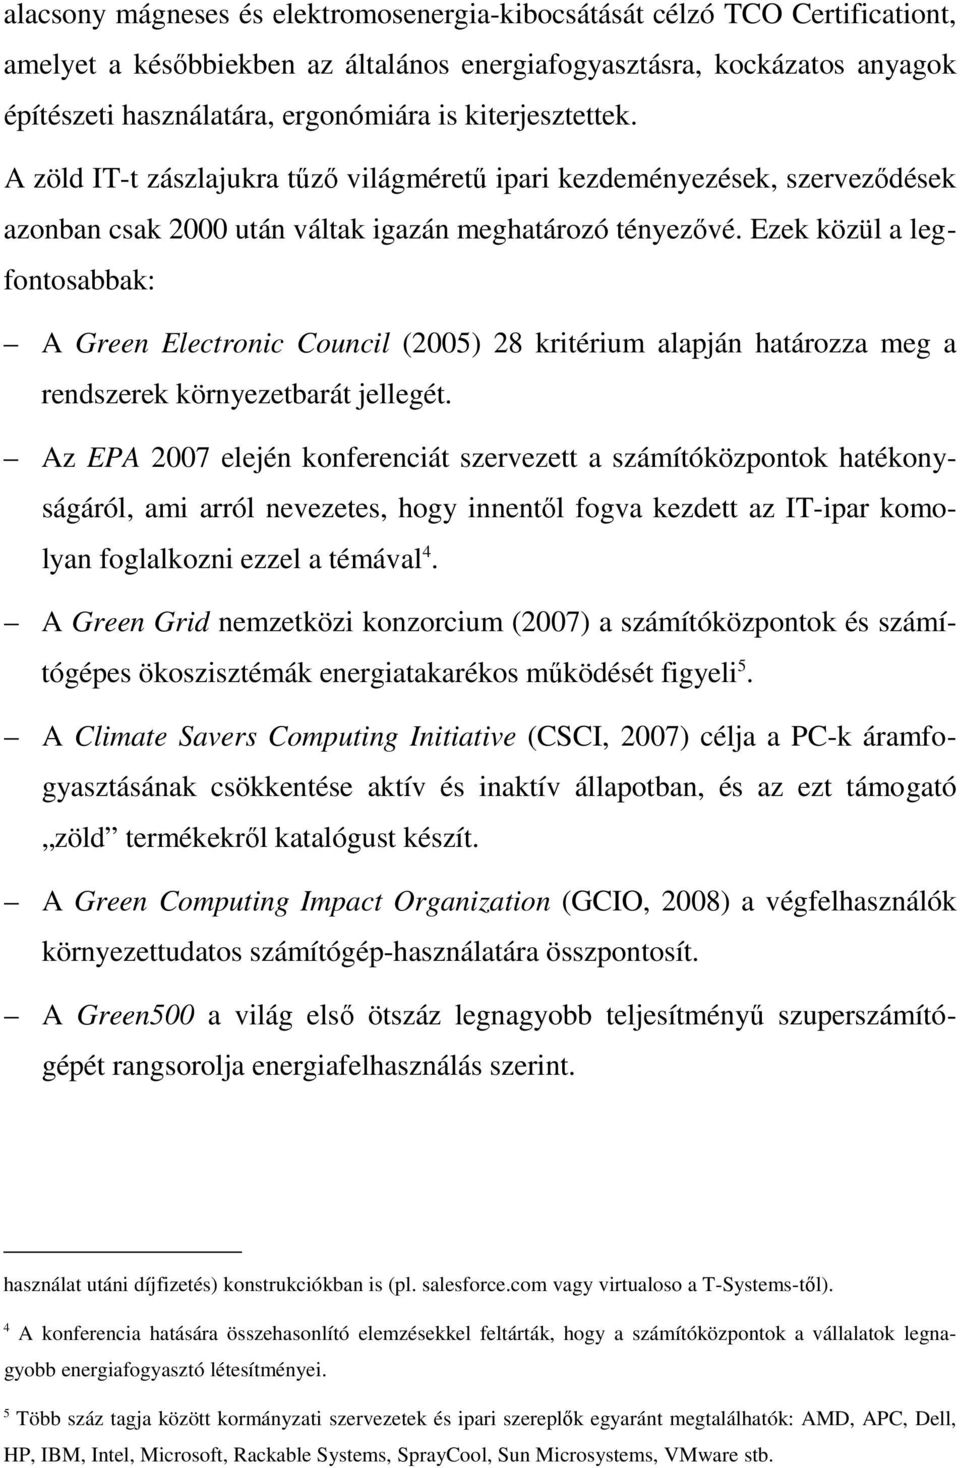 Ezek közül a legfontosabbak: A Green Electronic Council (2005) 28 kritérium alapján határozza meg a rendszerek környezetbarát jellegét.